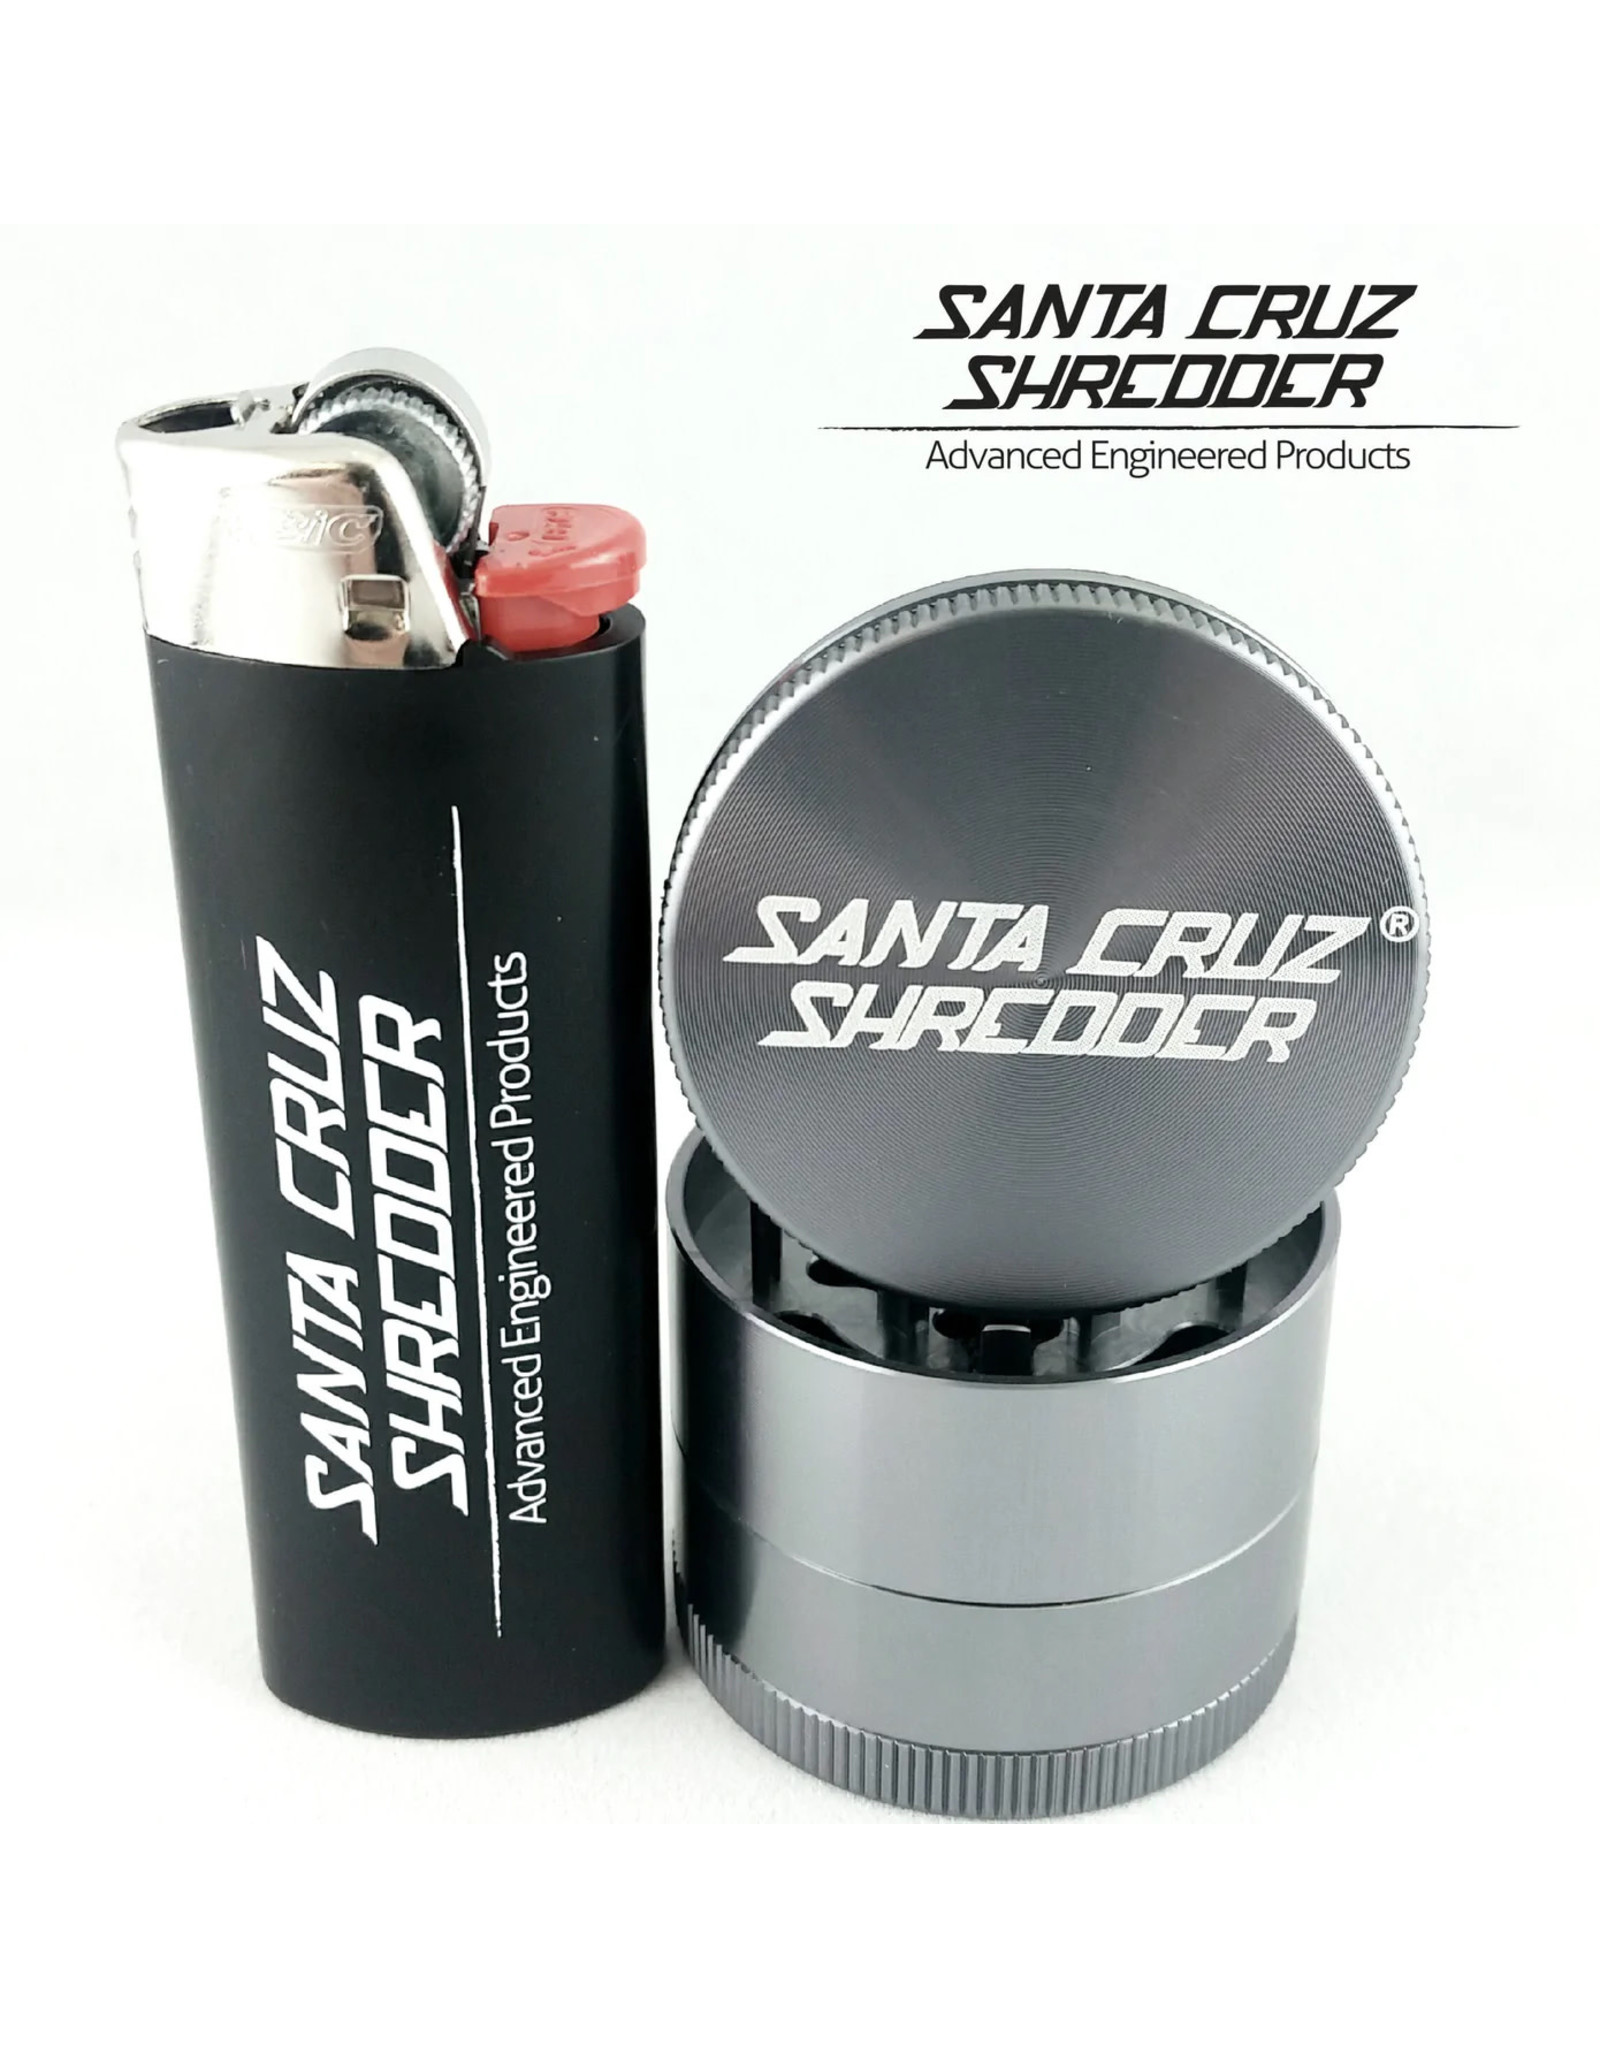 Santa Cruz Shredder Santa Cruz Shredder Small 4 Pc Grey